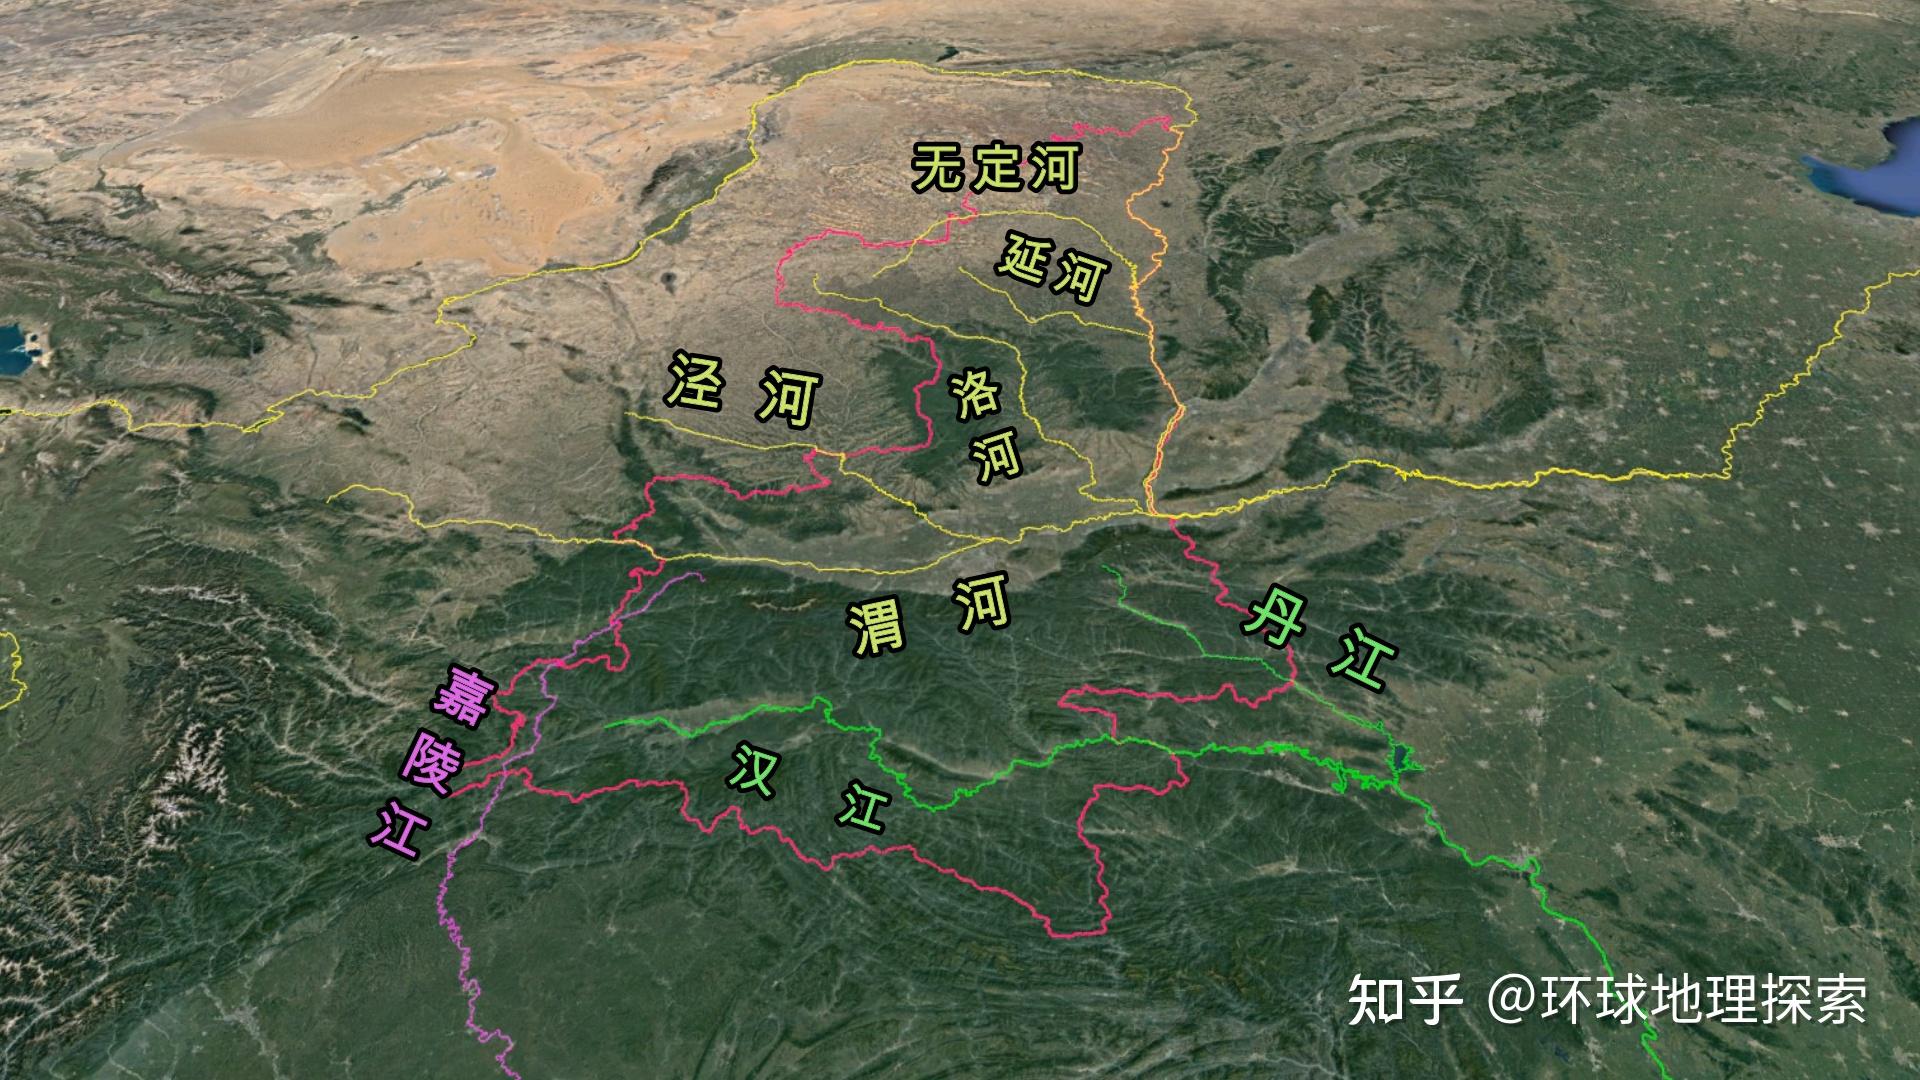 当然泾河,洛河作为渭河水系,是形成关中平原的主要力量,而陕北地区的